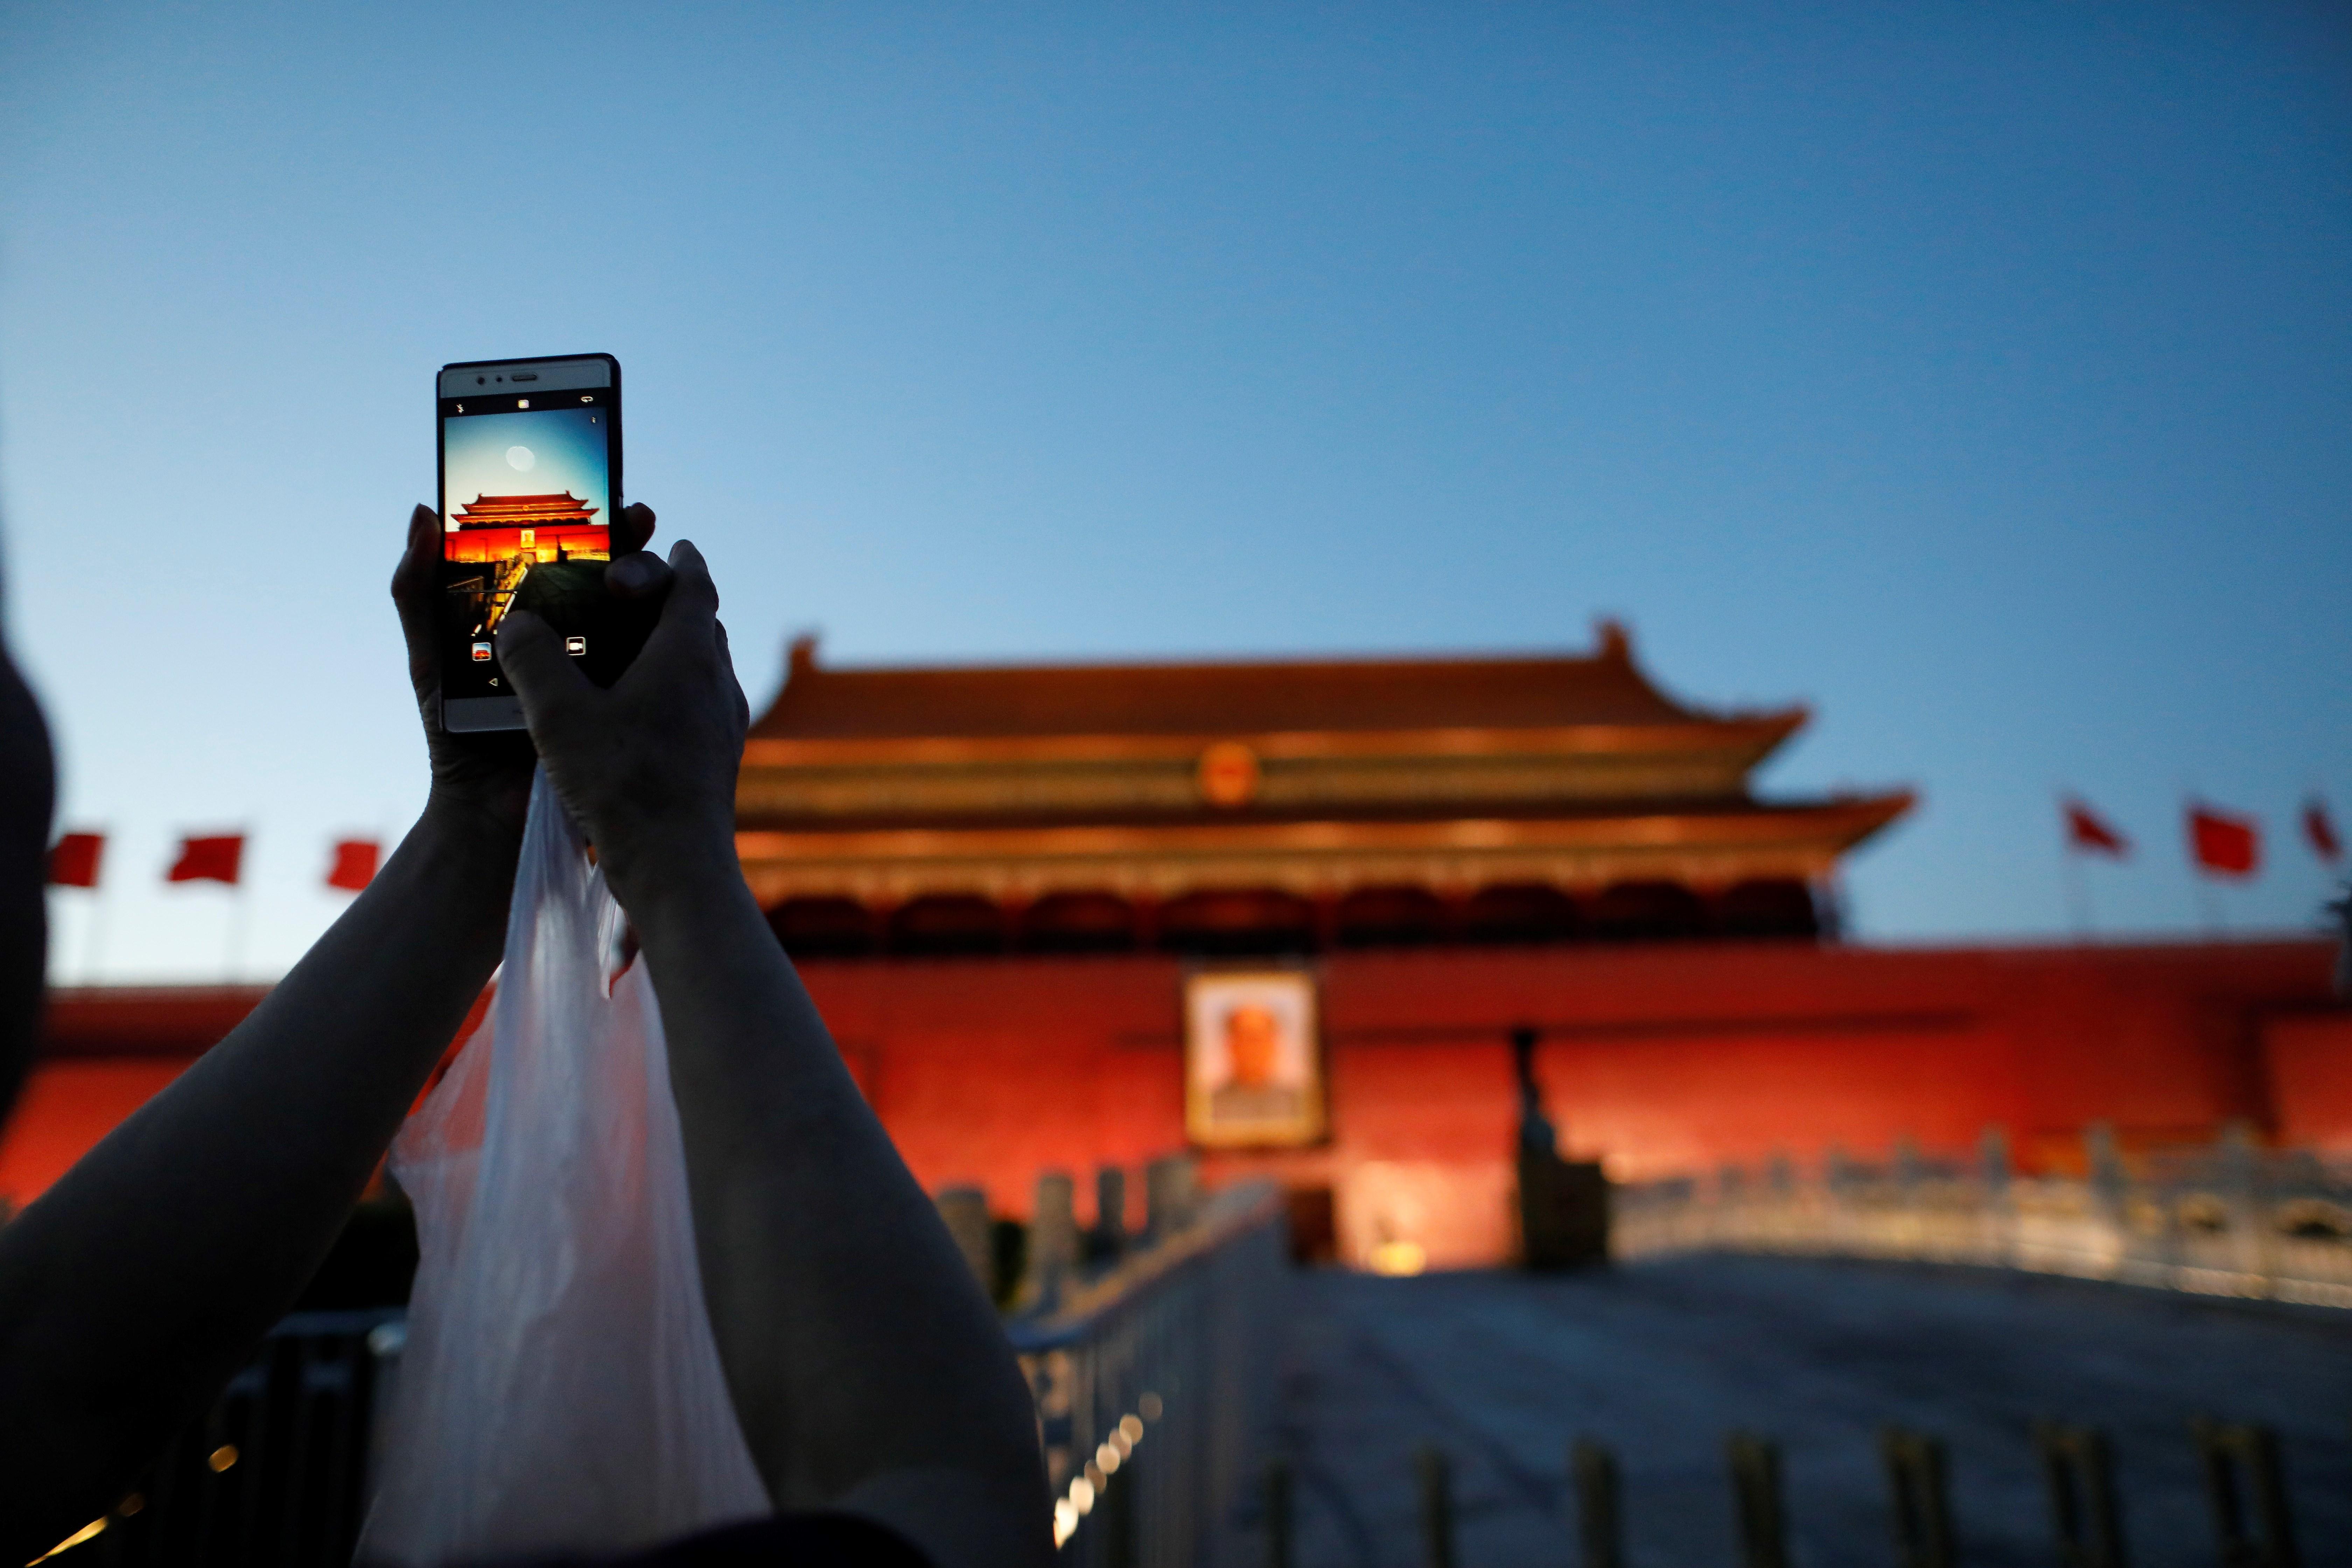 Trenta anys després, Pequín continua sense reconèixer la matança de Tiananmen